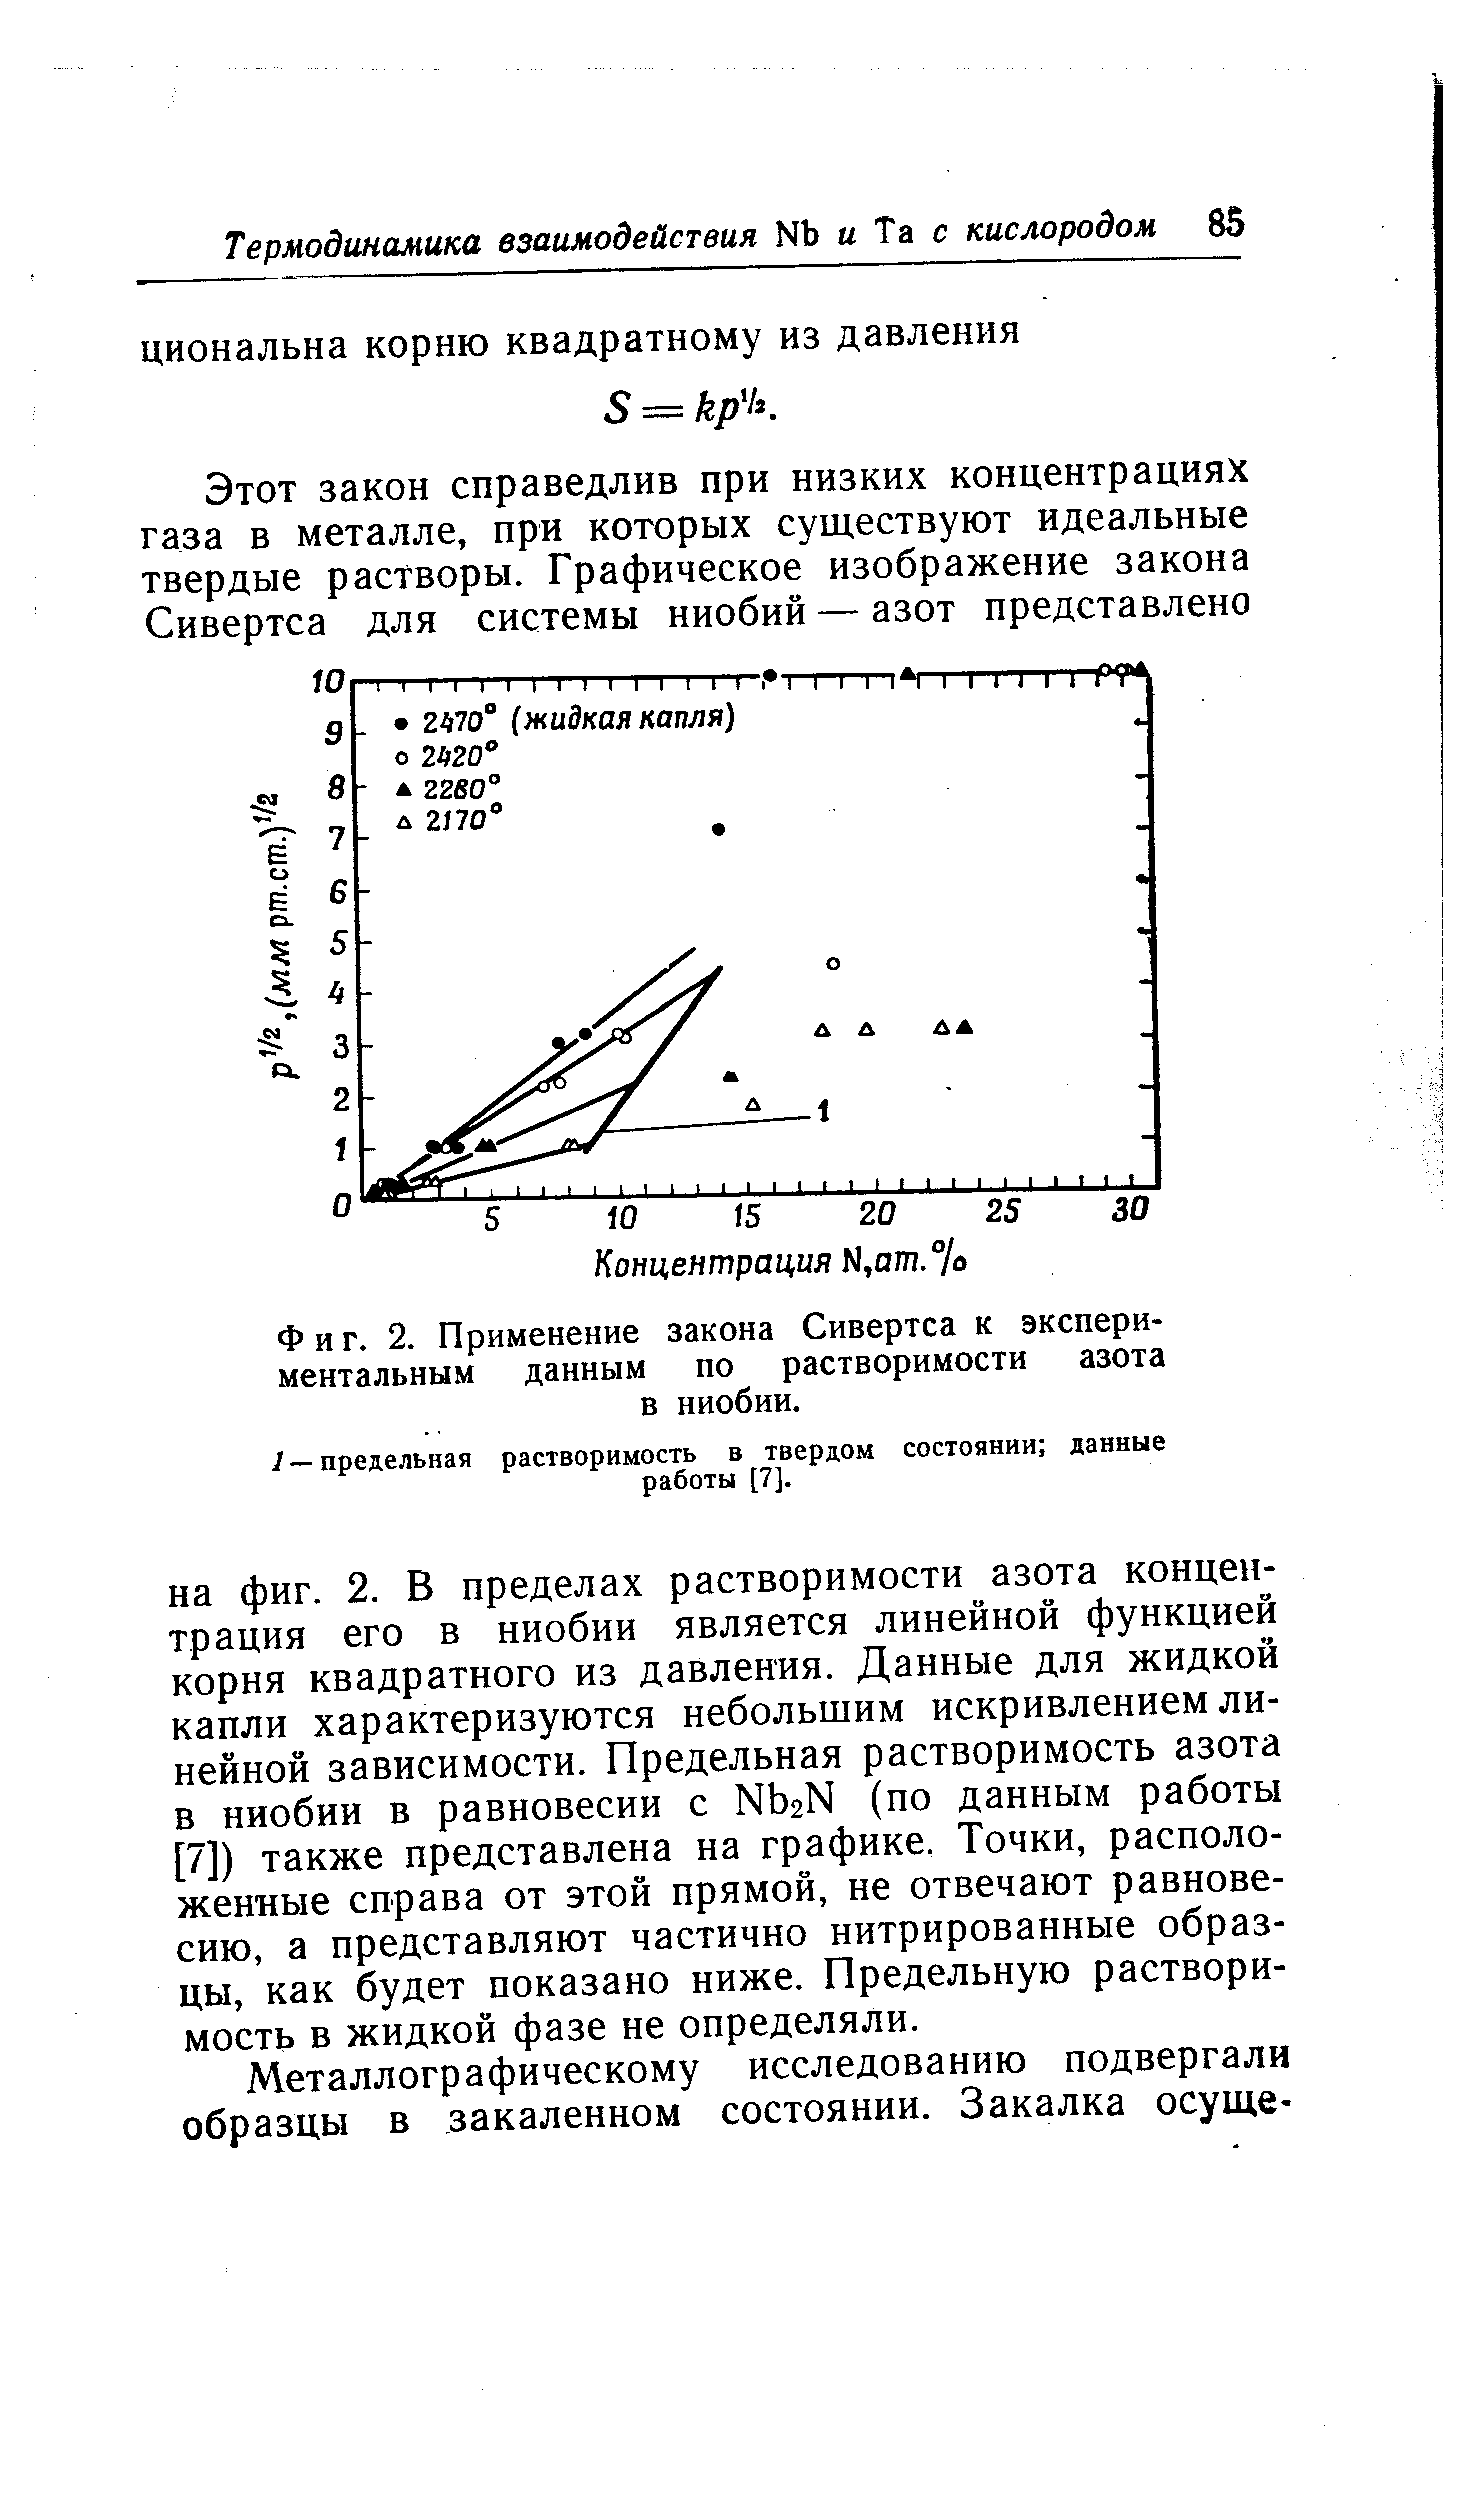 Фиг. 2. Применение закона Сивертса к экспериментальным данным по растворимости азота в ниобии.
